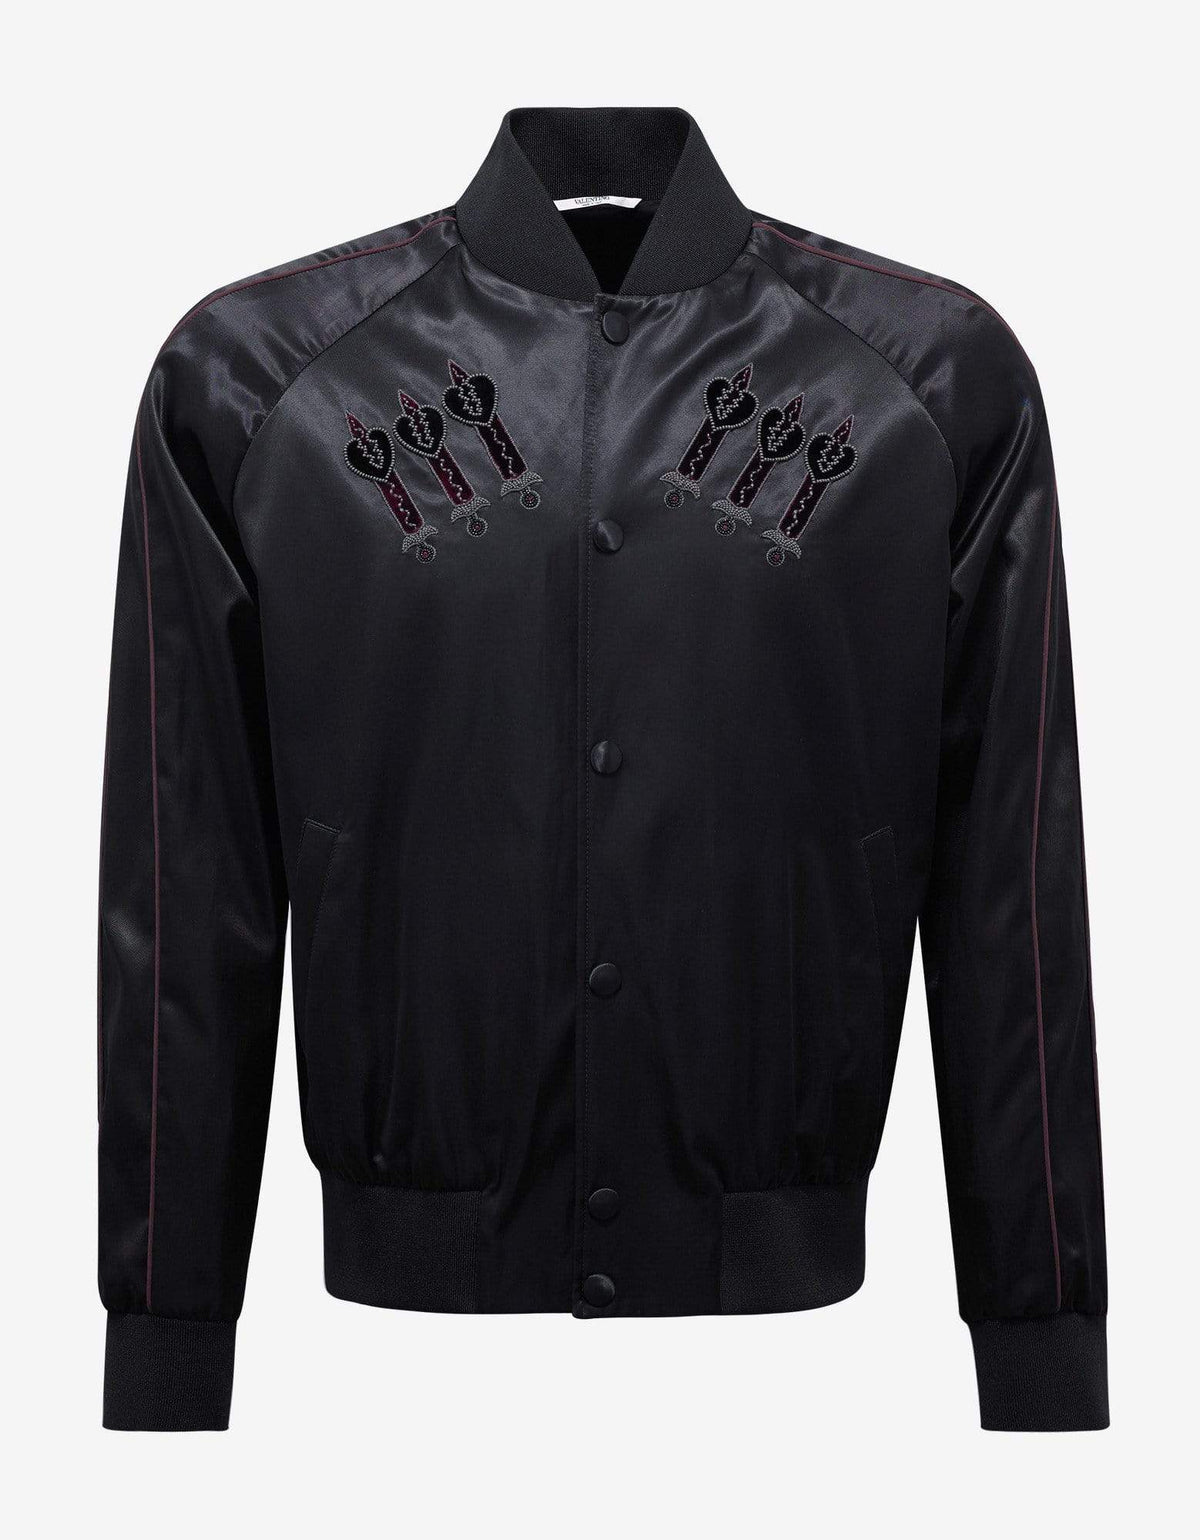 Valentino Black Loveblade Embroidery Souvenir Jacket